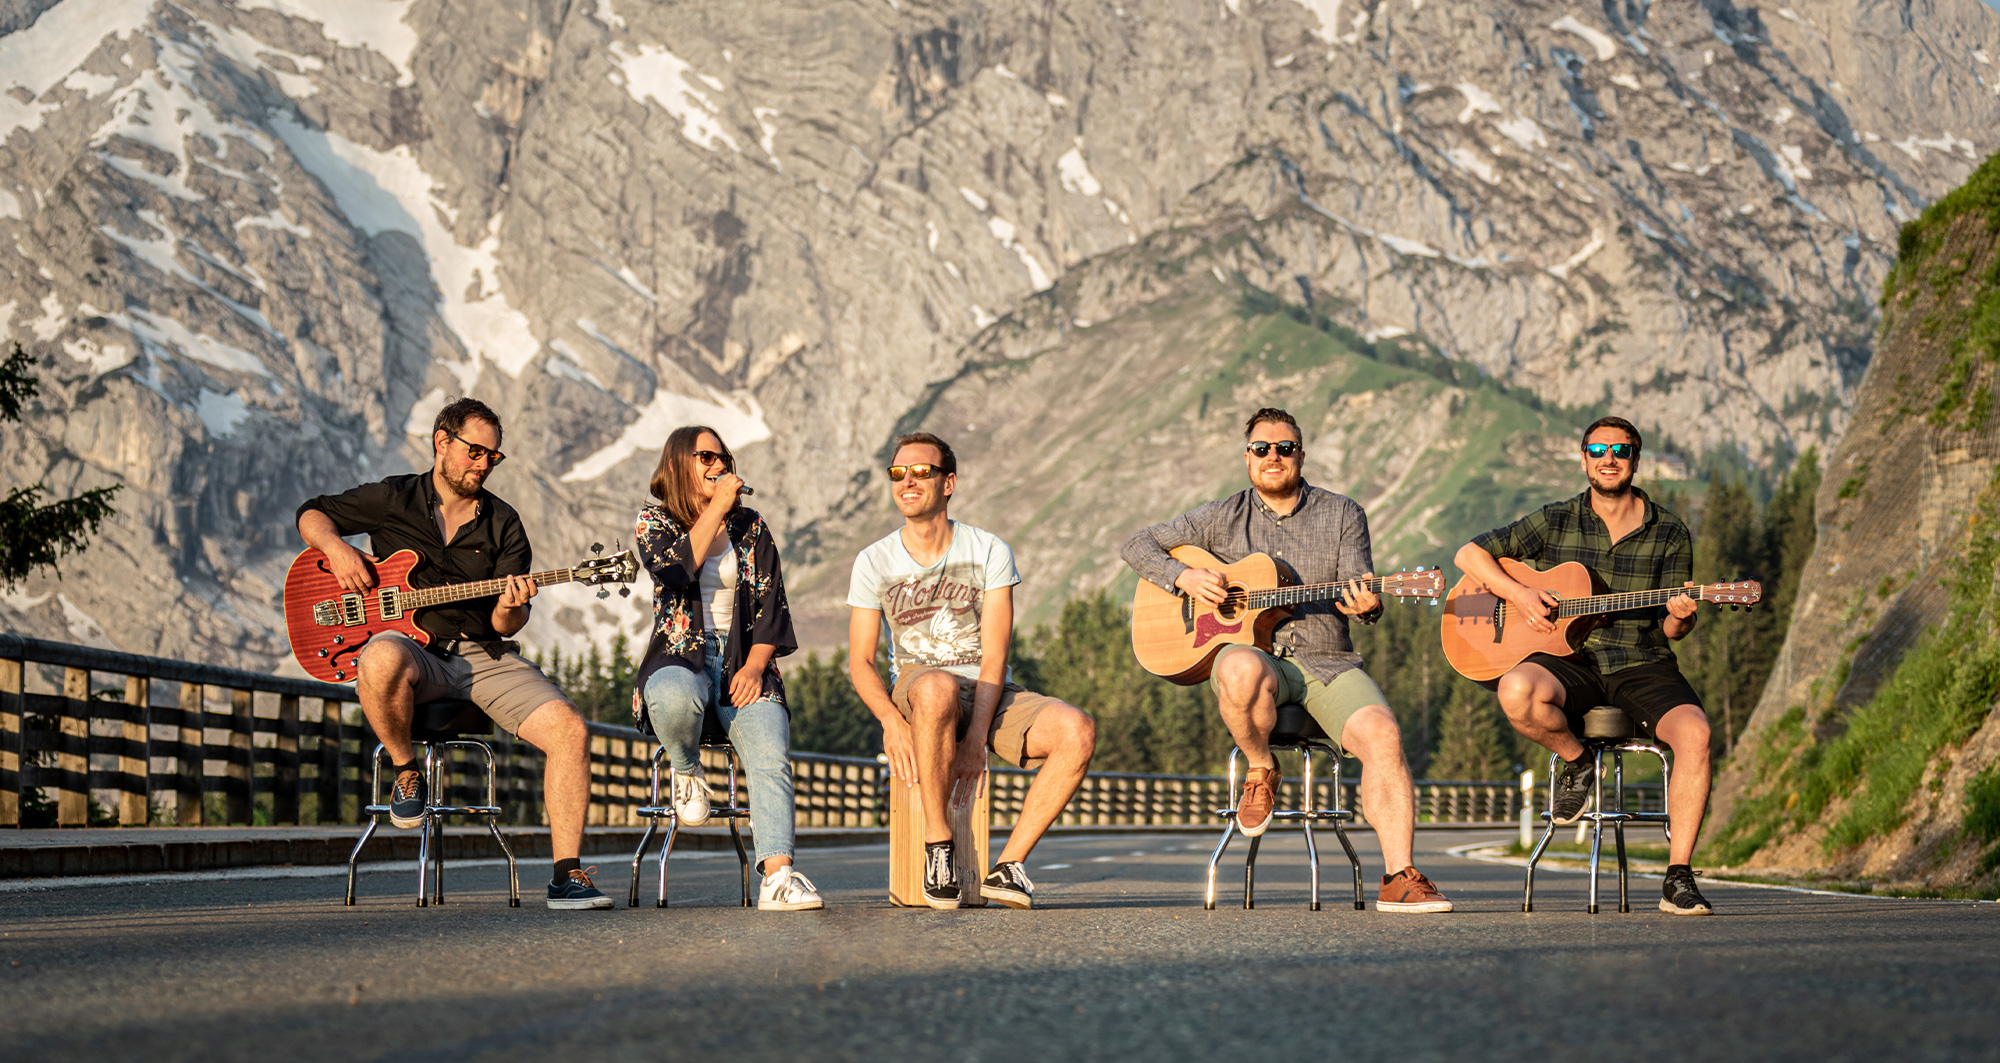 Gruppenfoto von der Band BAM Berchtesgaden Akustik Musik. Aufgereiht quer über die Strasse spielen alle 5 auf ihren Instrument